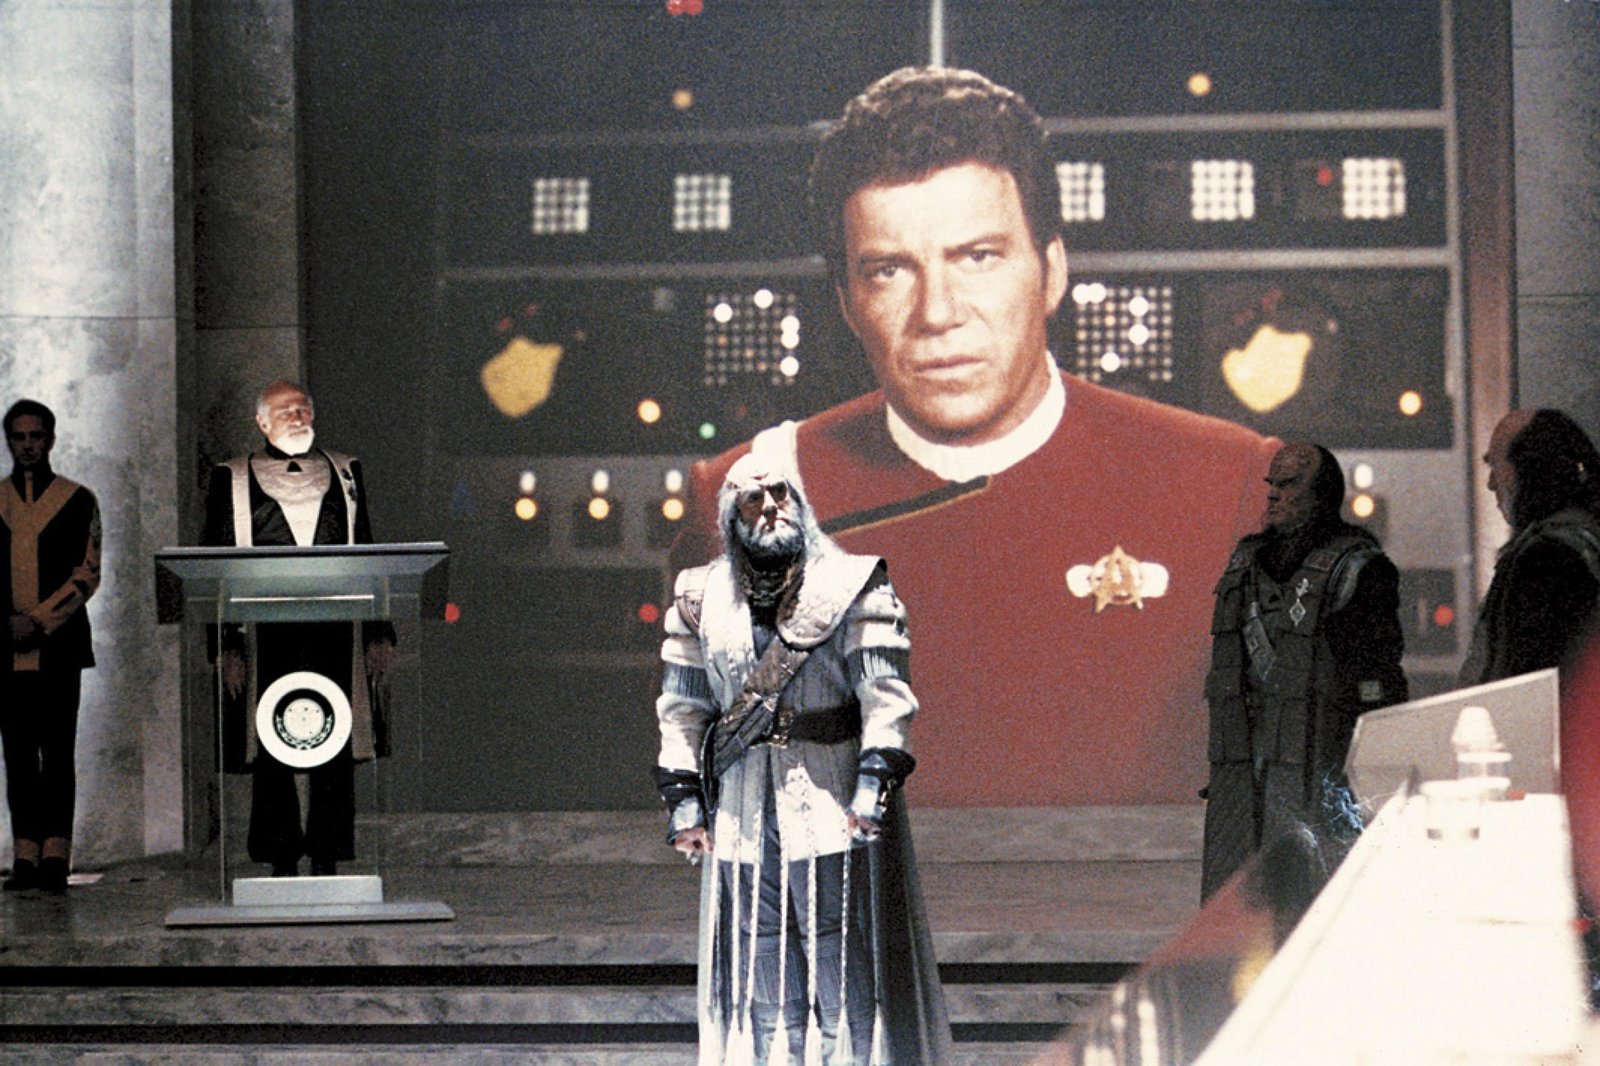 Star Trek 4 - Zurück in die Gegenwart (4K Ultra HD)